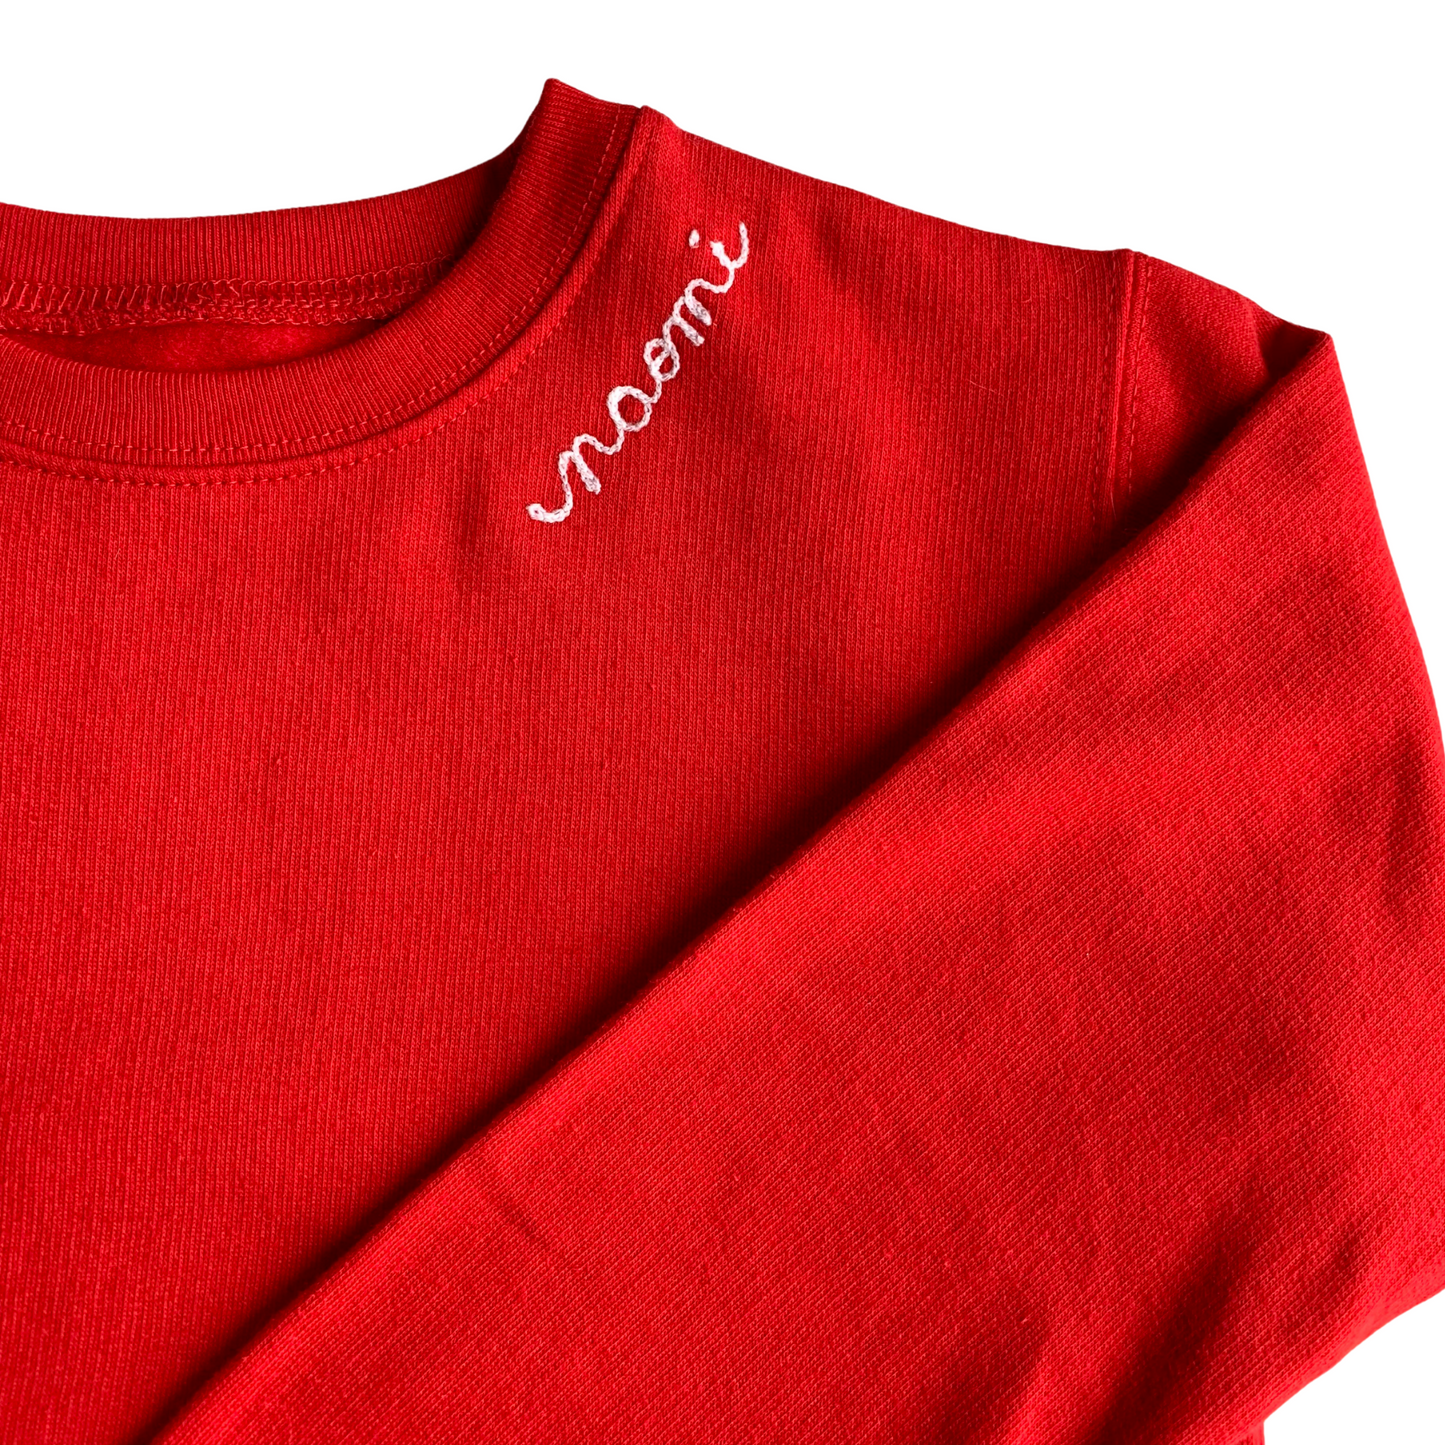 The Kids Chainstitch Sweatshirt - Red